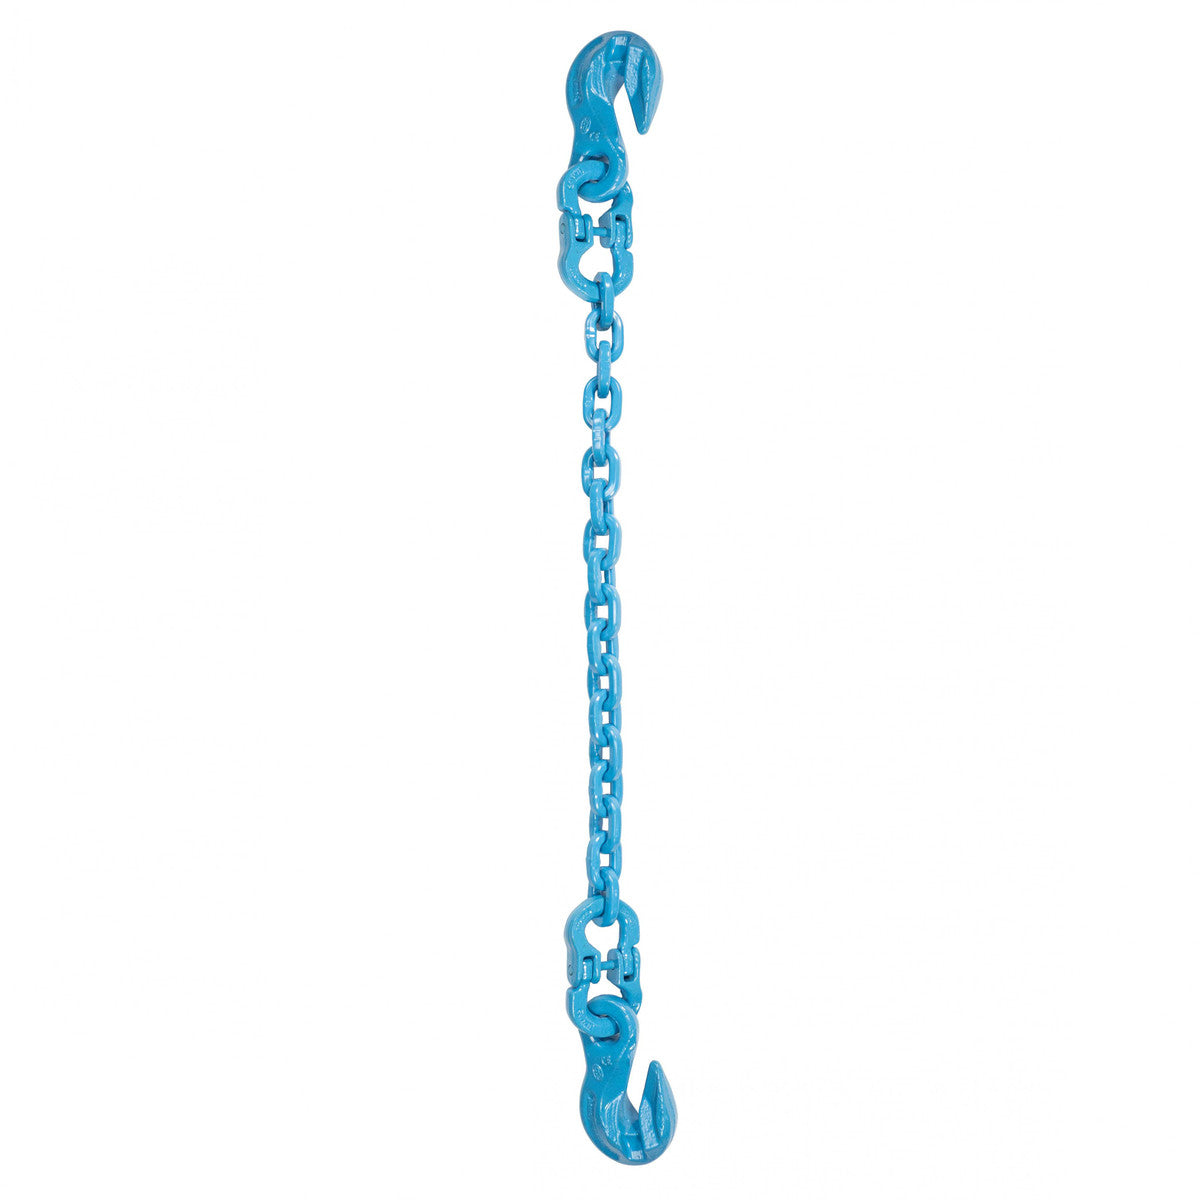 9/32" x 14' - Pewag Single Leg Chain Sling w/ Grab & Grab Hooks - Grade 120